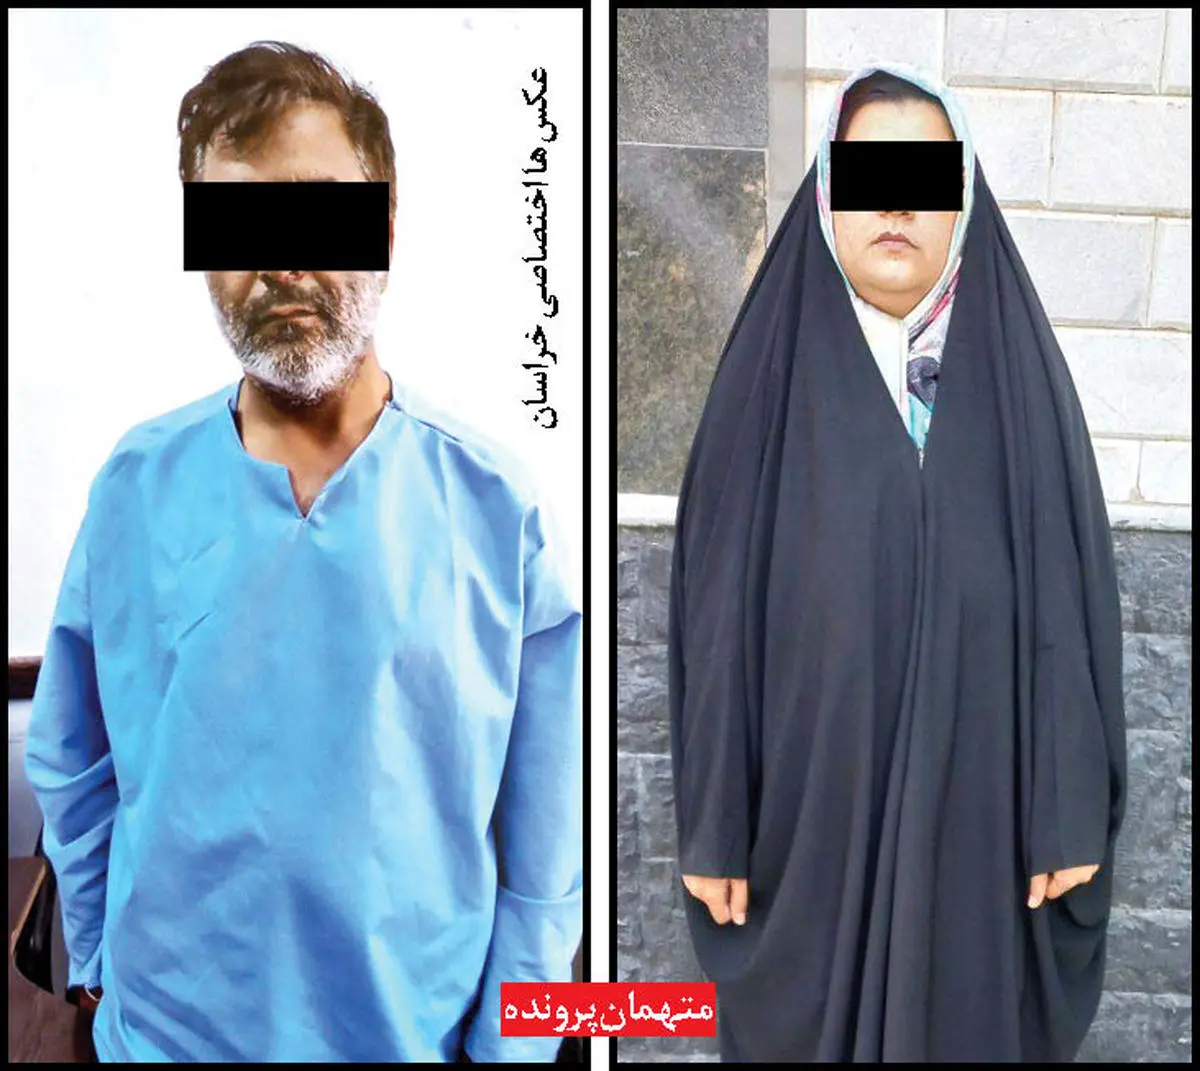 زن شیاد؛ پشت پرده جنایت 410 هزار دلاری در مشهد